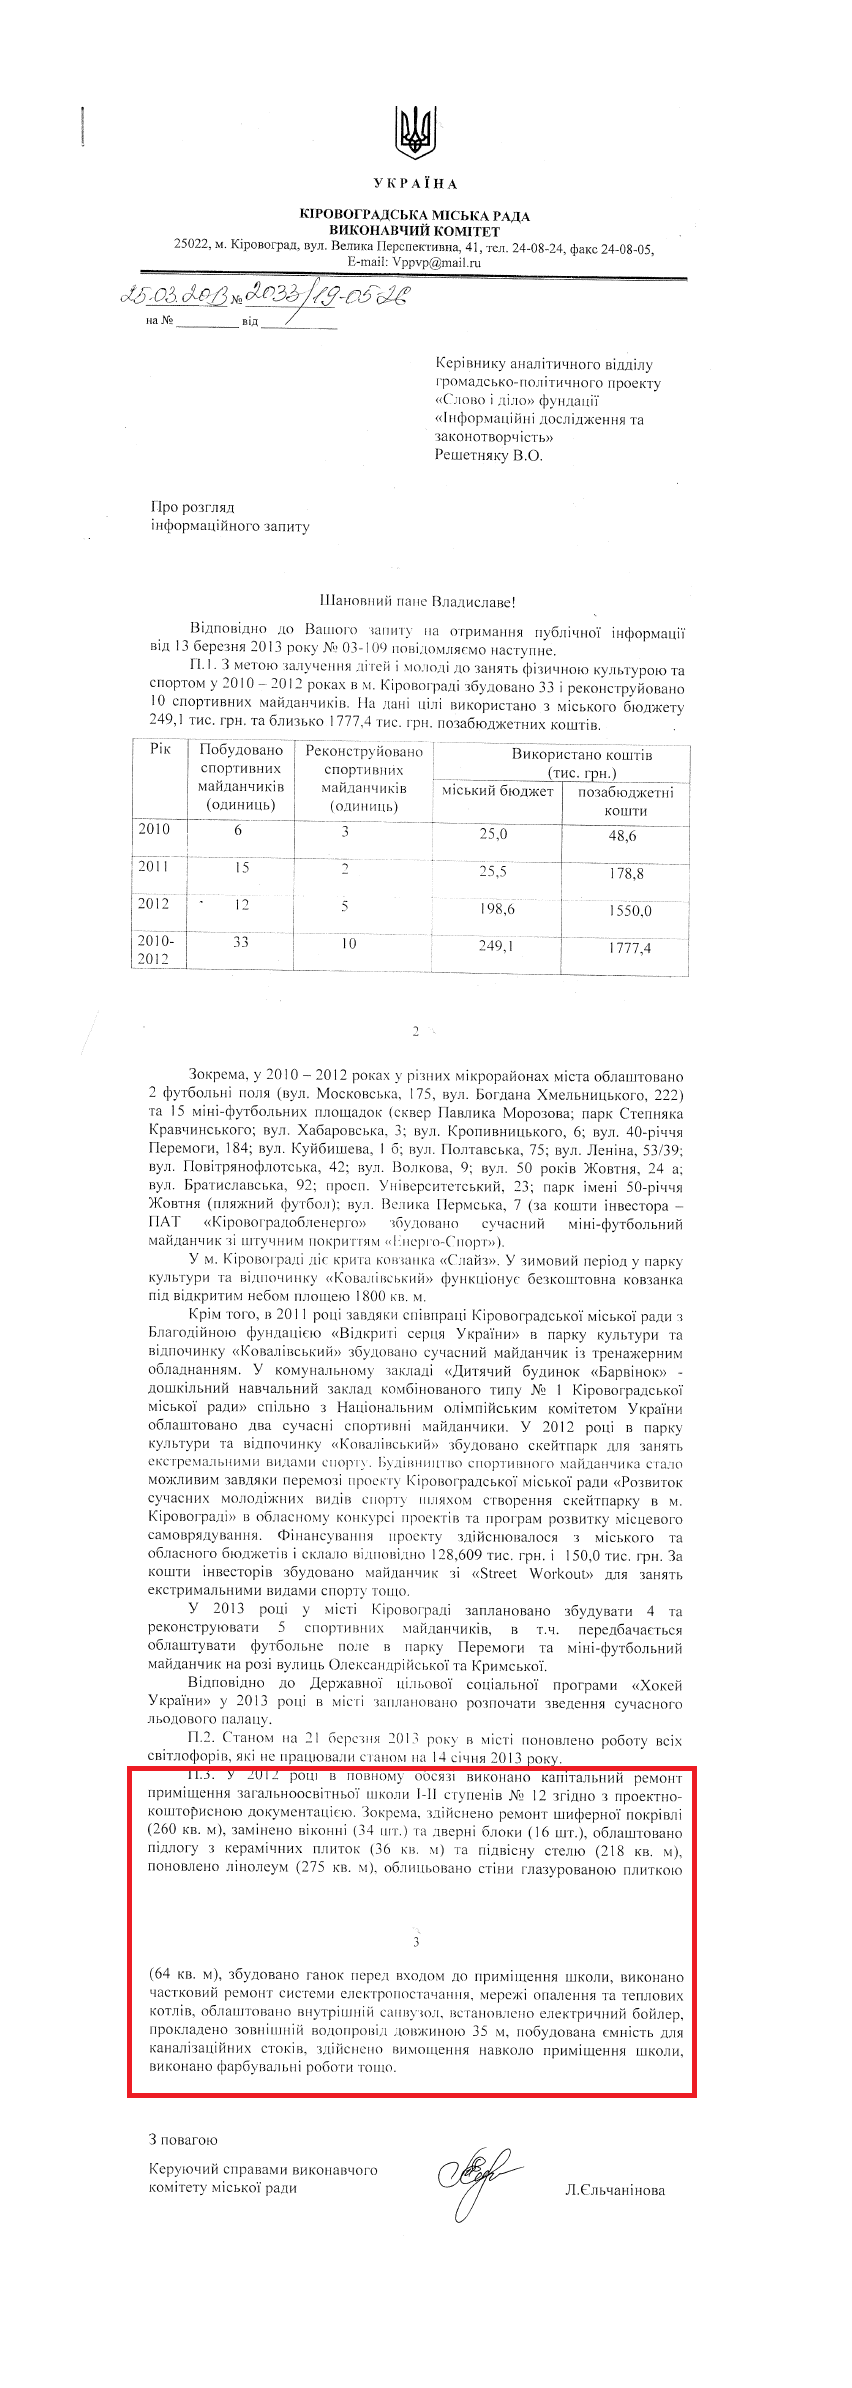 Лист керуючого справами виконавчого комітету міської ради Л.Єльчанінової